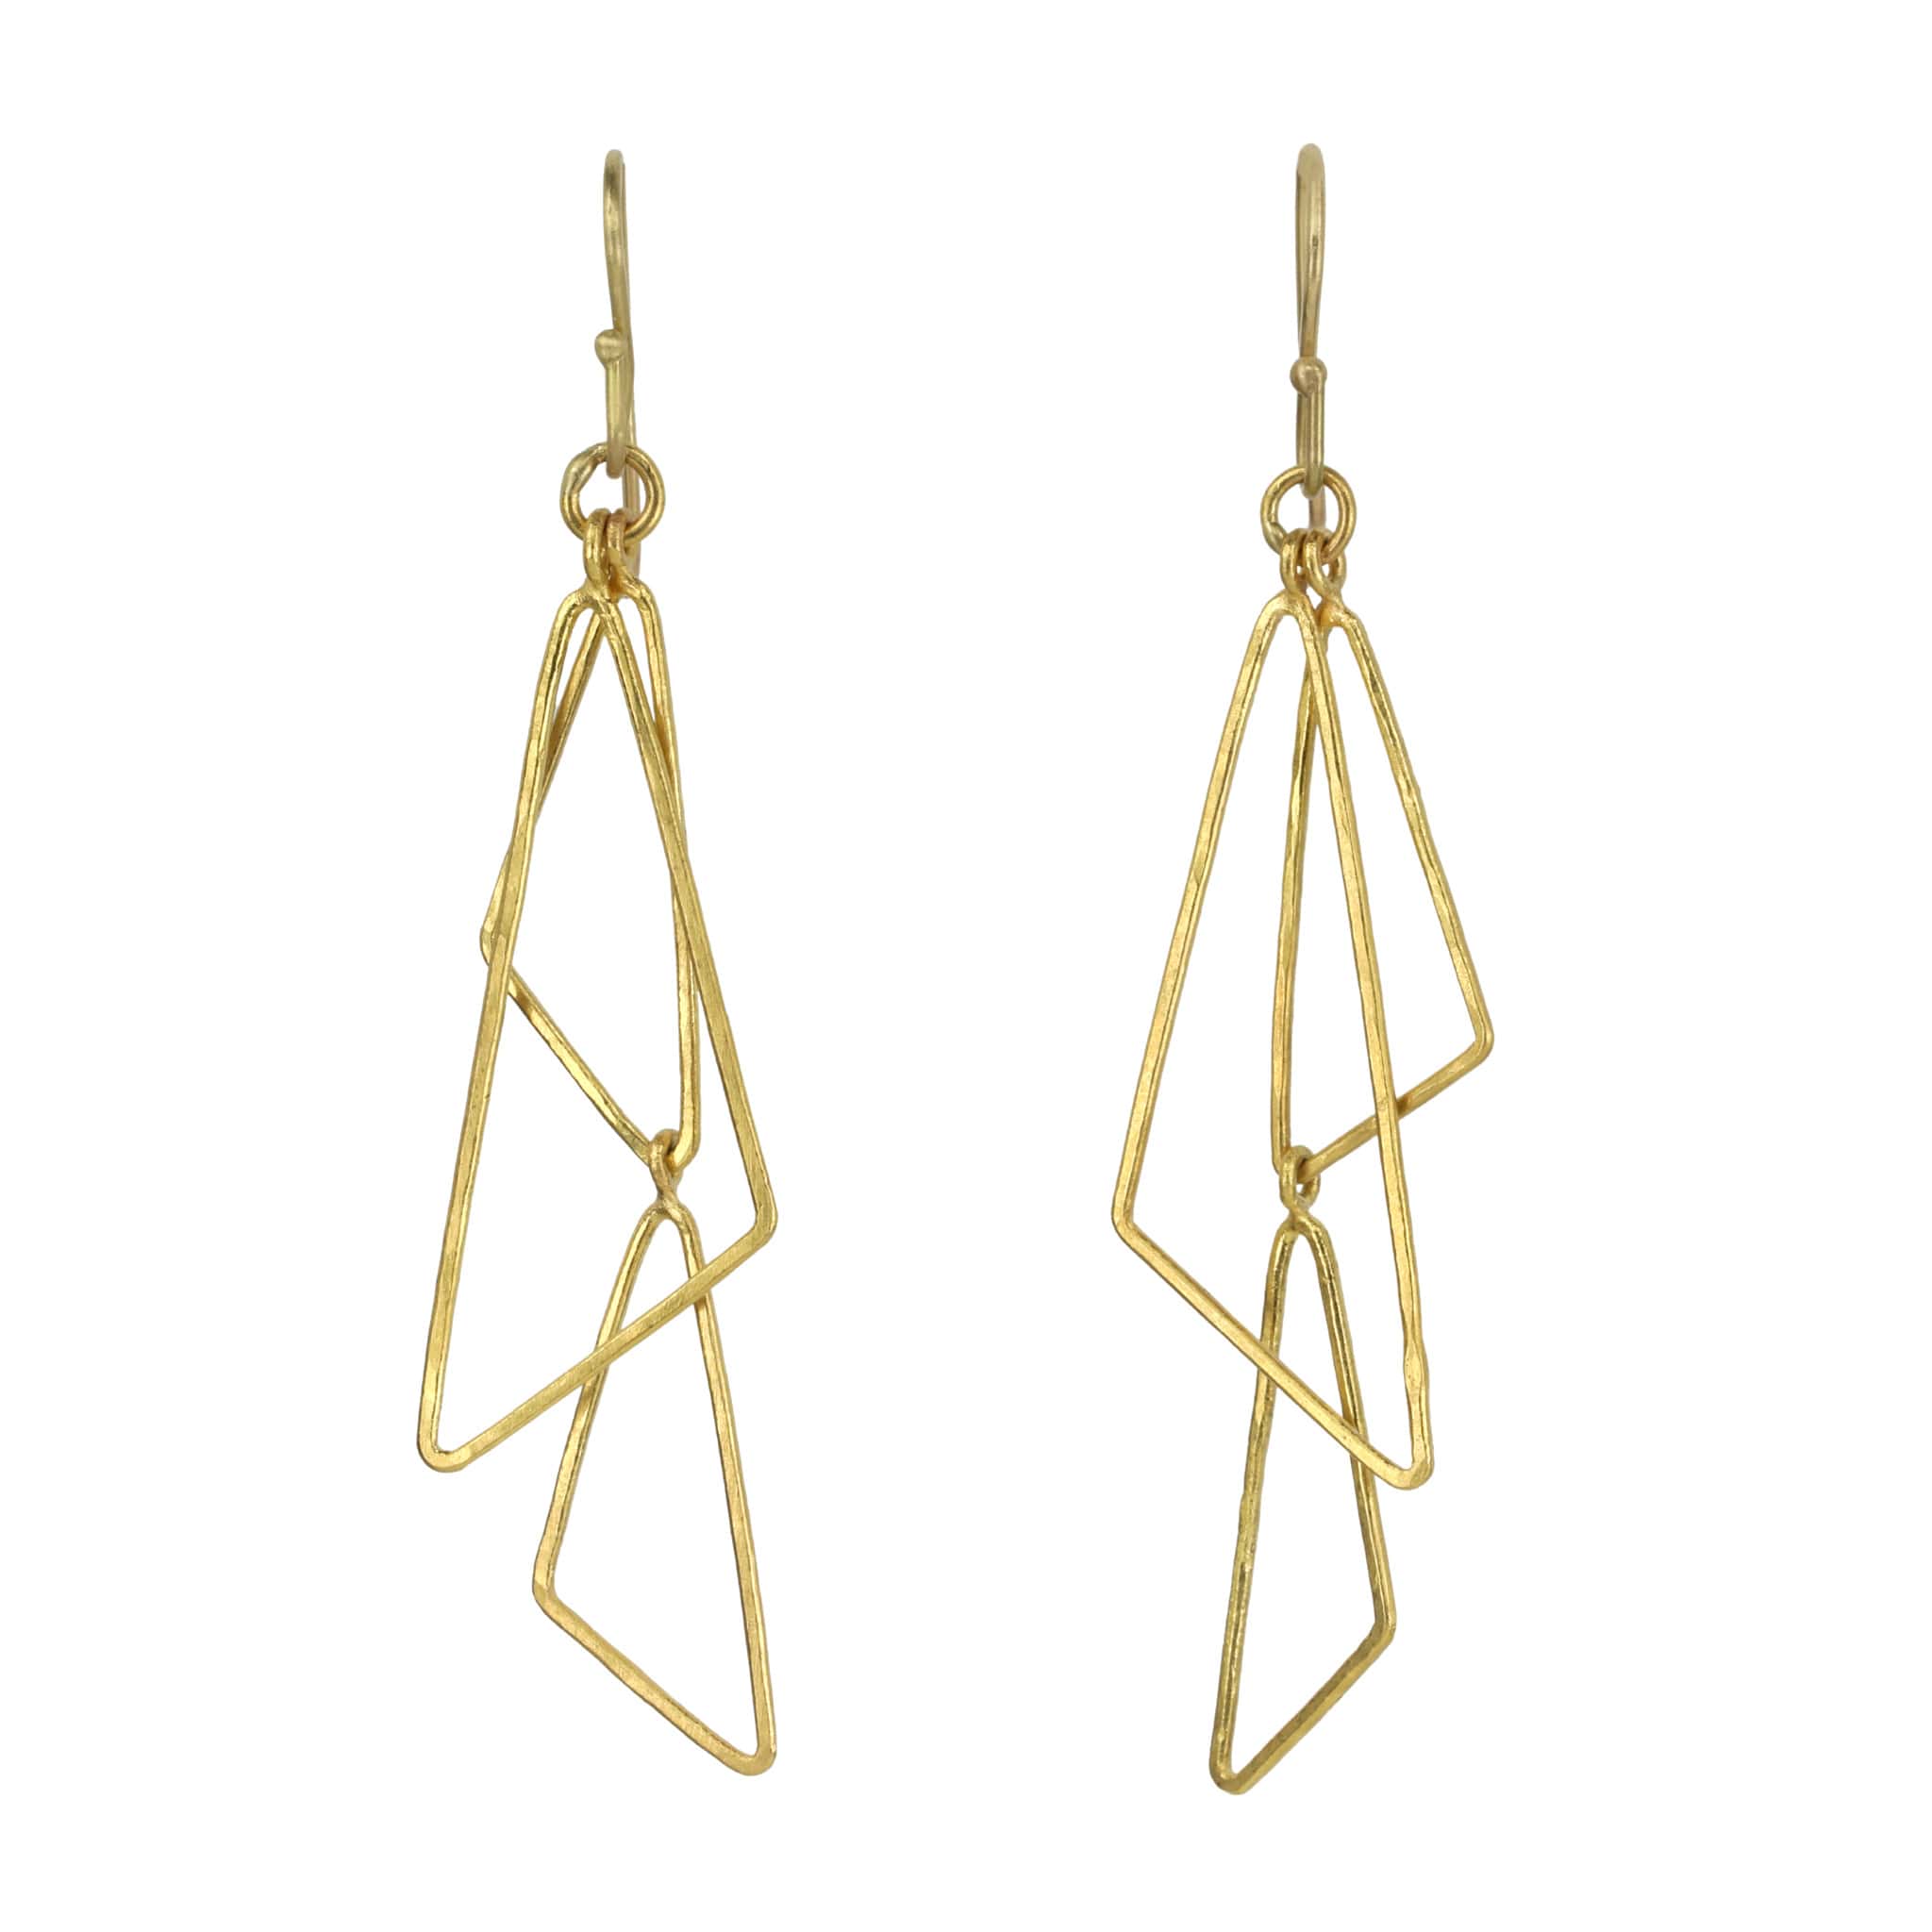 Rosanne Pugliese 22 Karat Yellow Gold Triple Triangle Drop Earrings